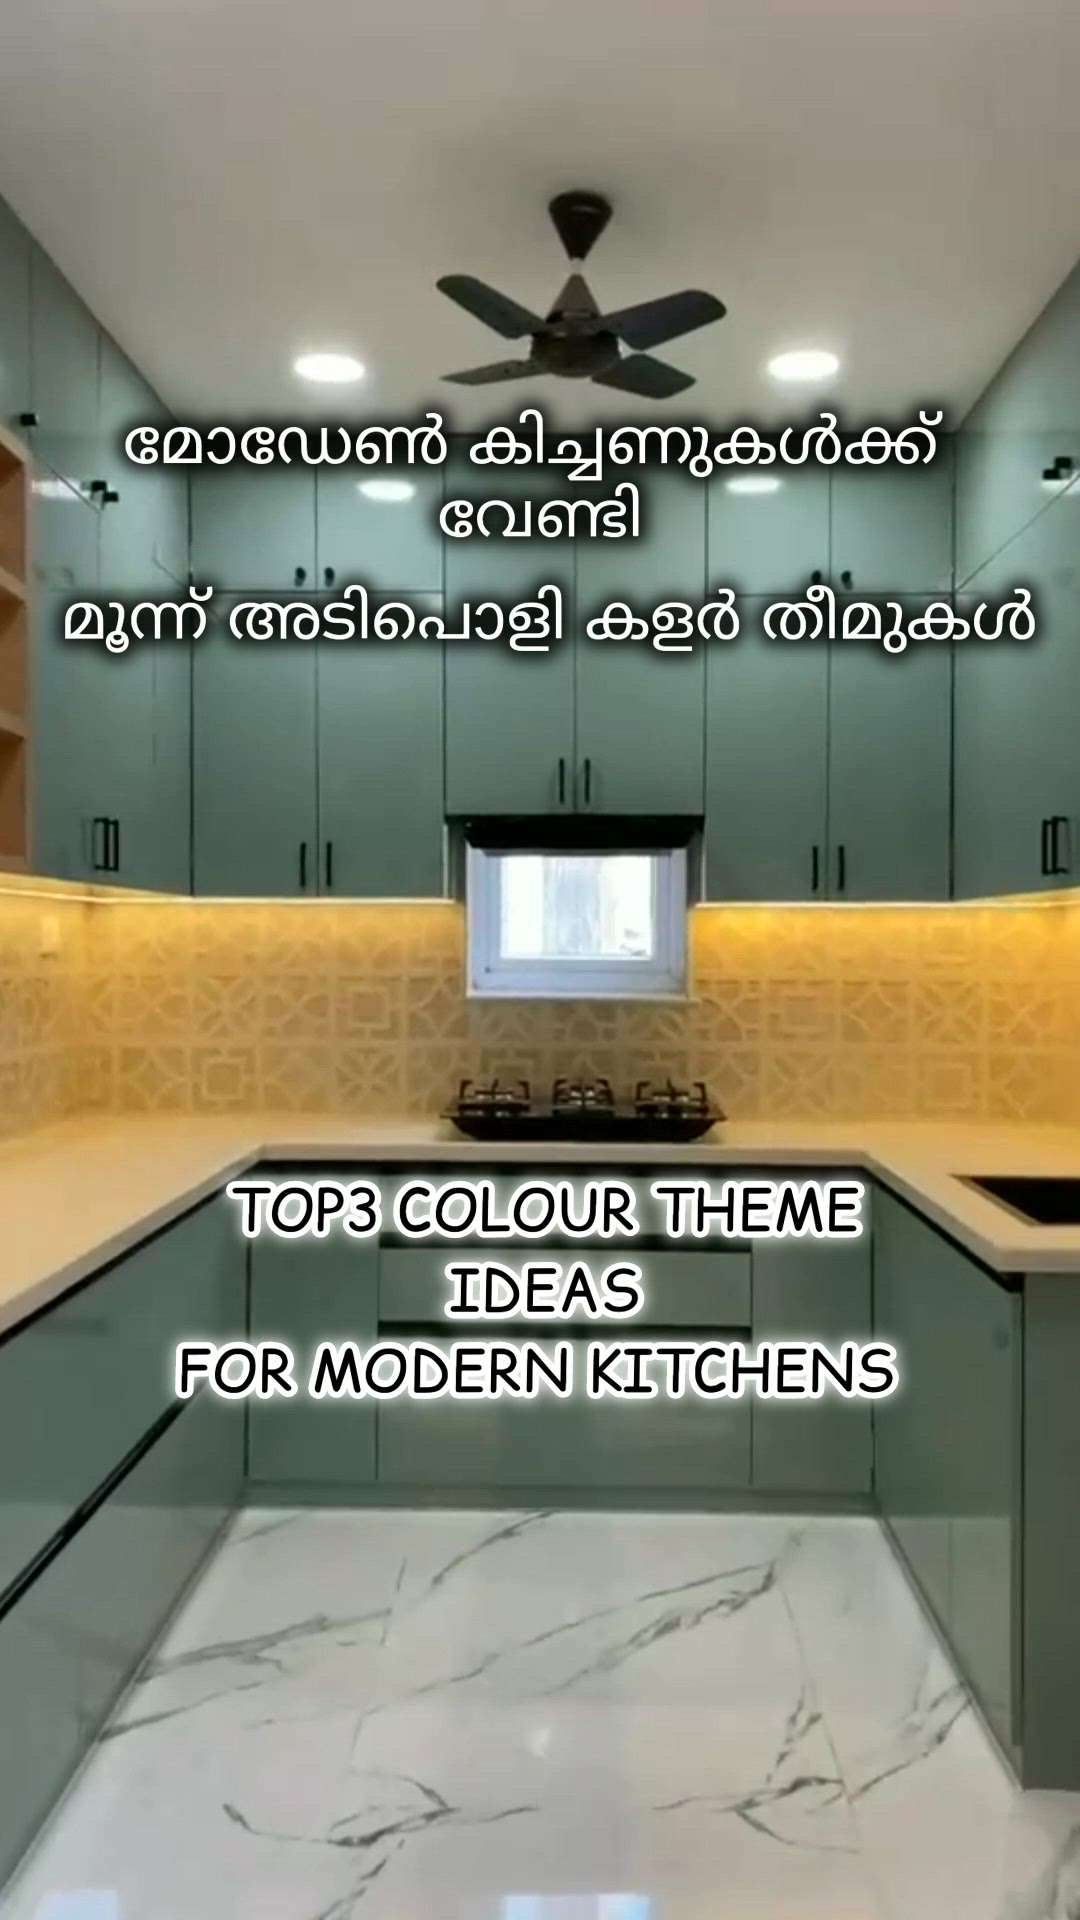 TOP3 colour theme ideas for modern kitchen

 #Creatorsofkolo #top3 #kitchenideas #modernhome #ideas #kitchen